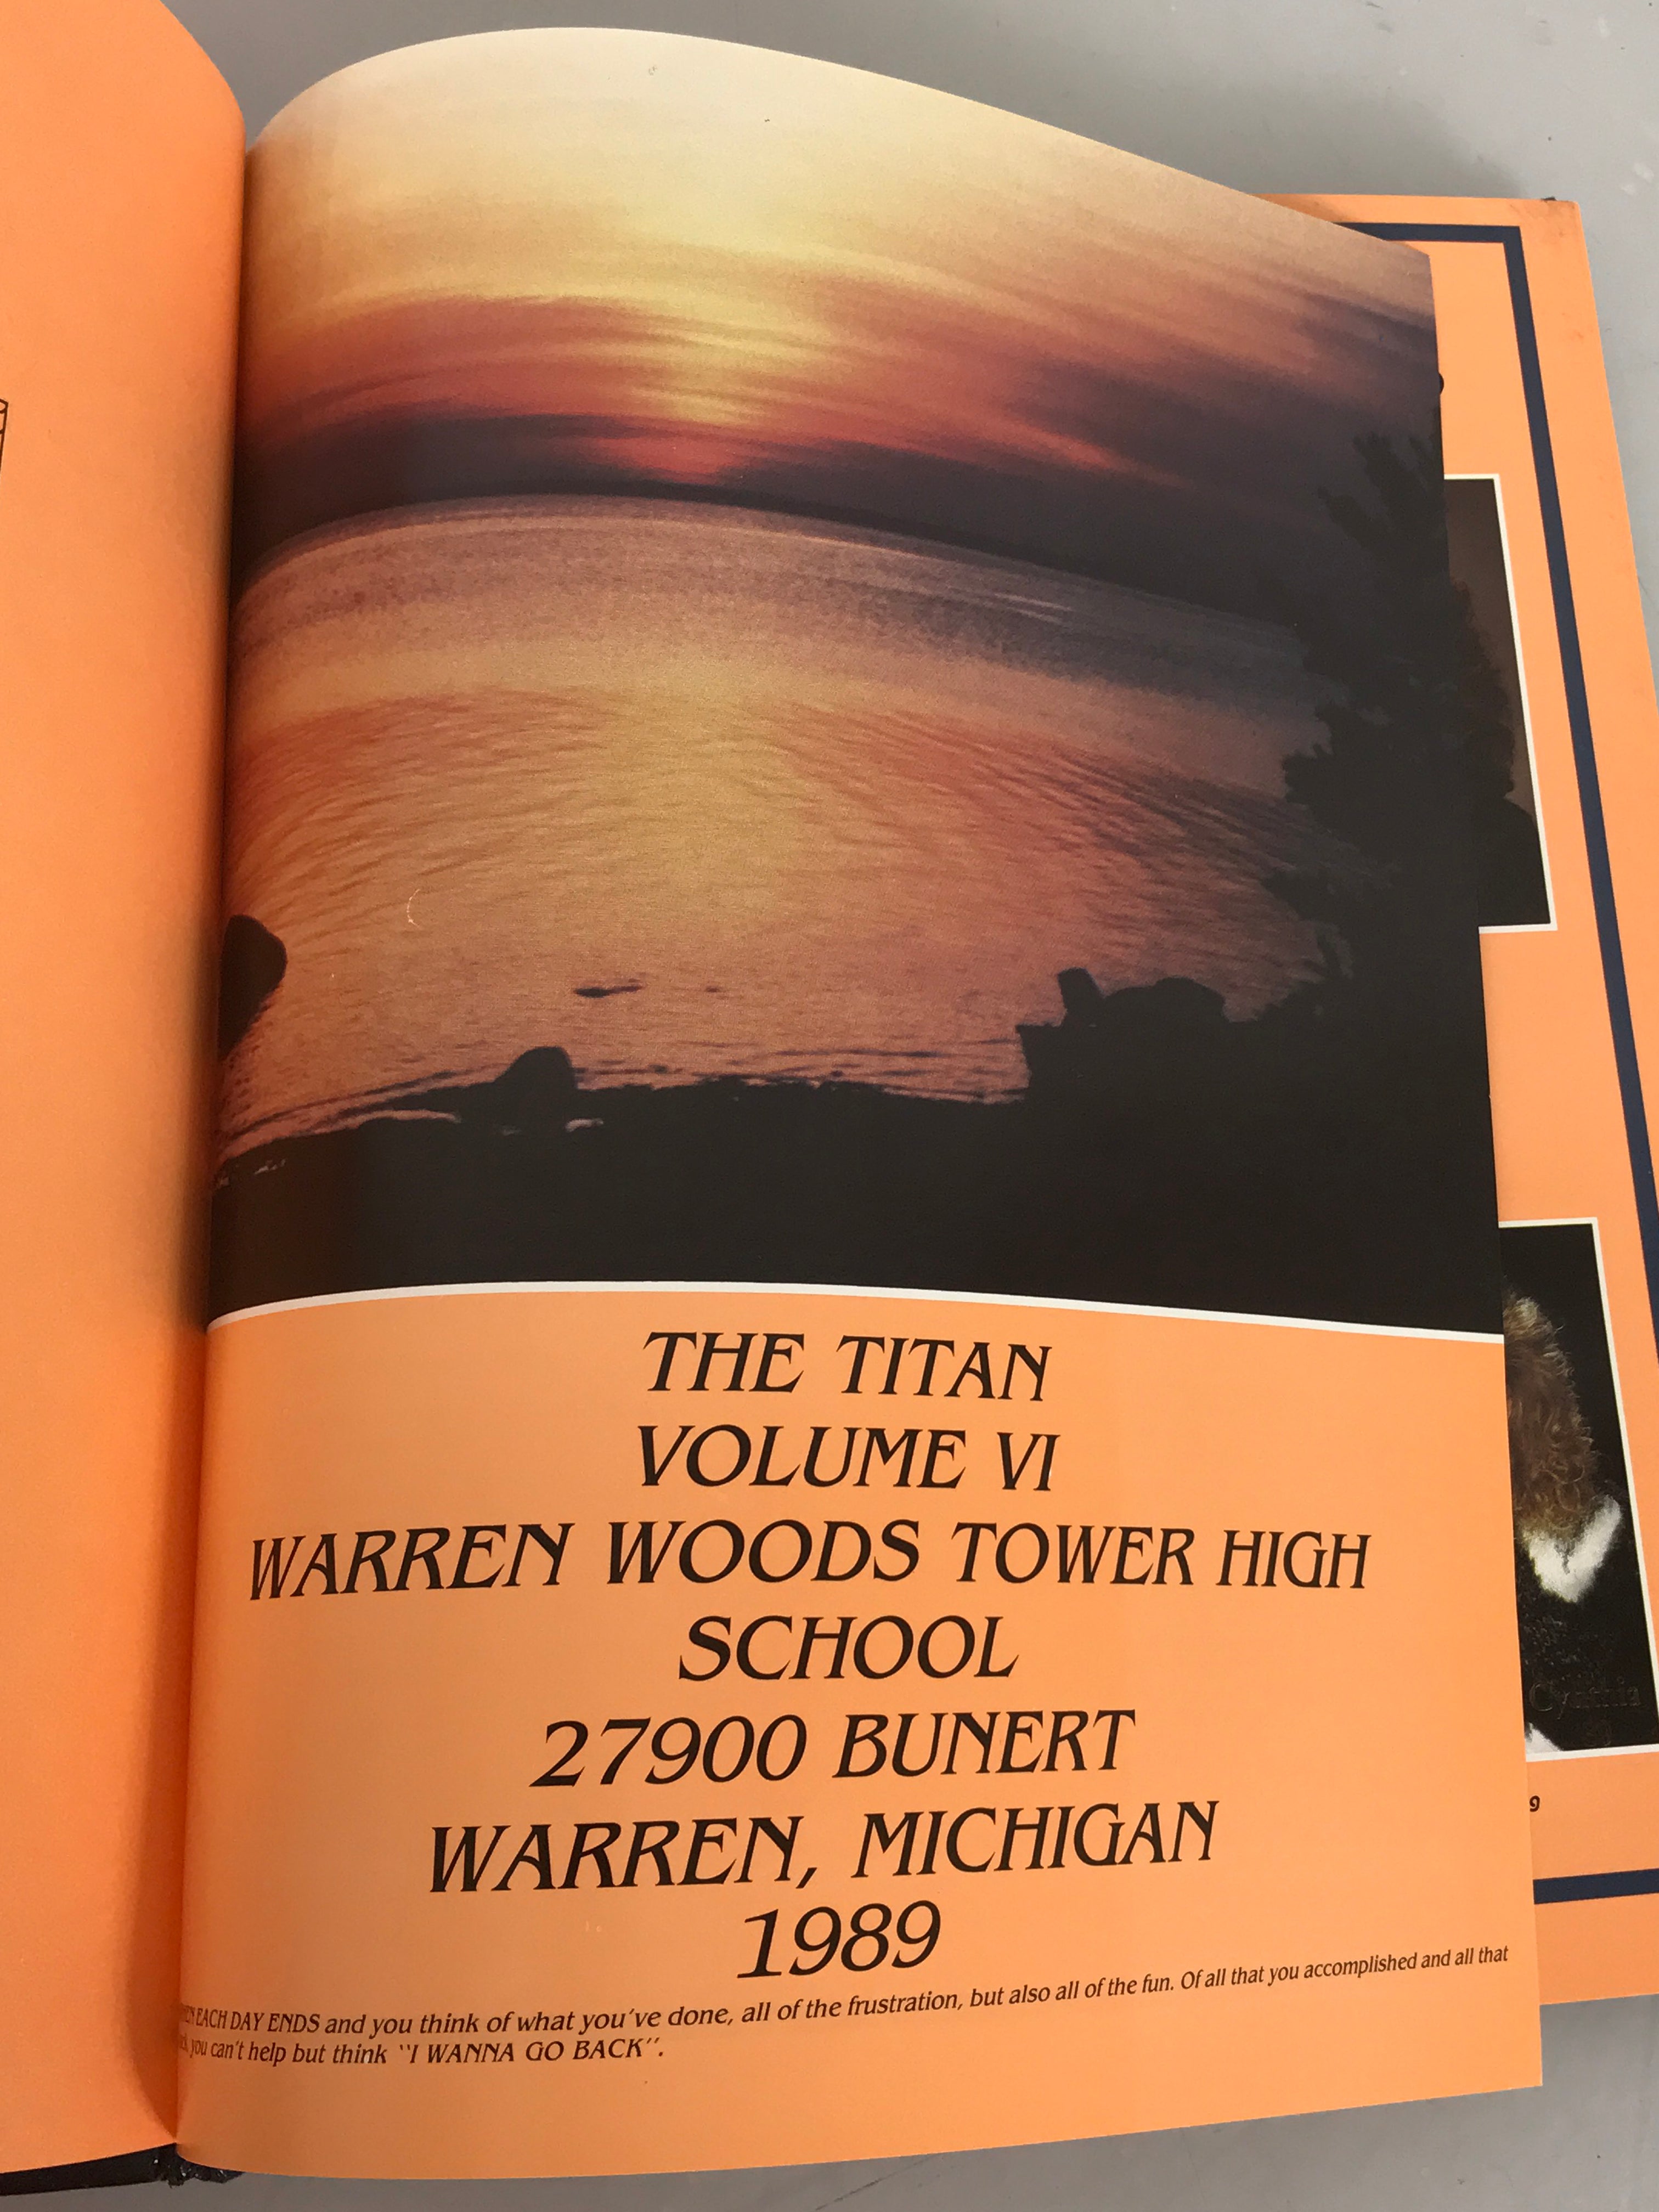 1989 Warren Woods Tower High School Yearbook Warren Michigan HC